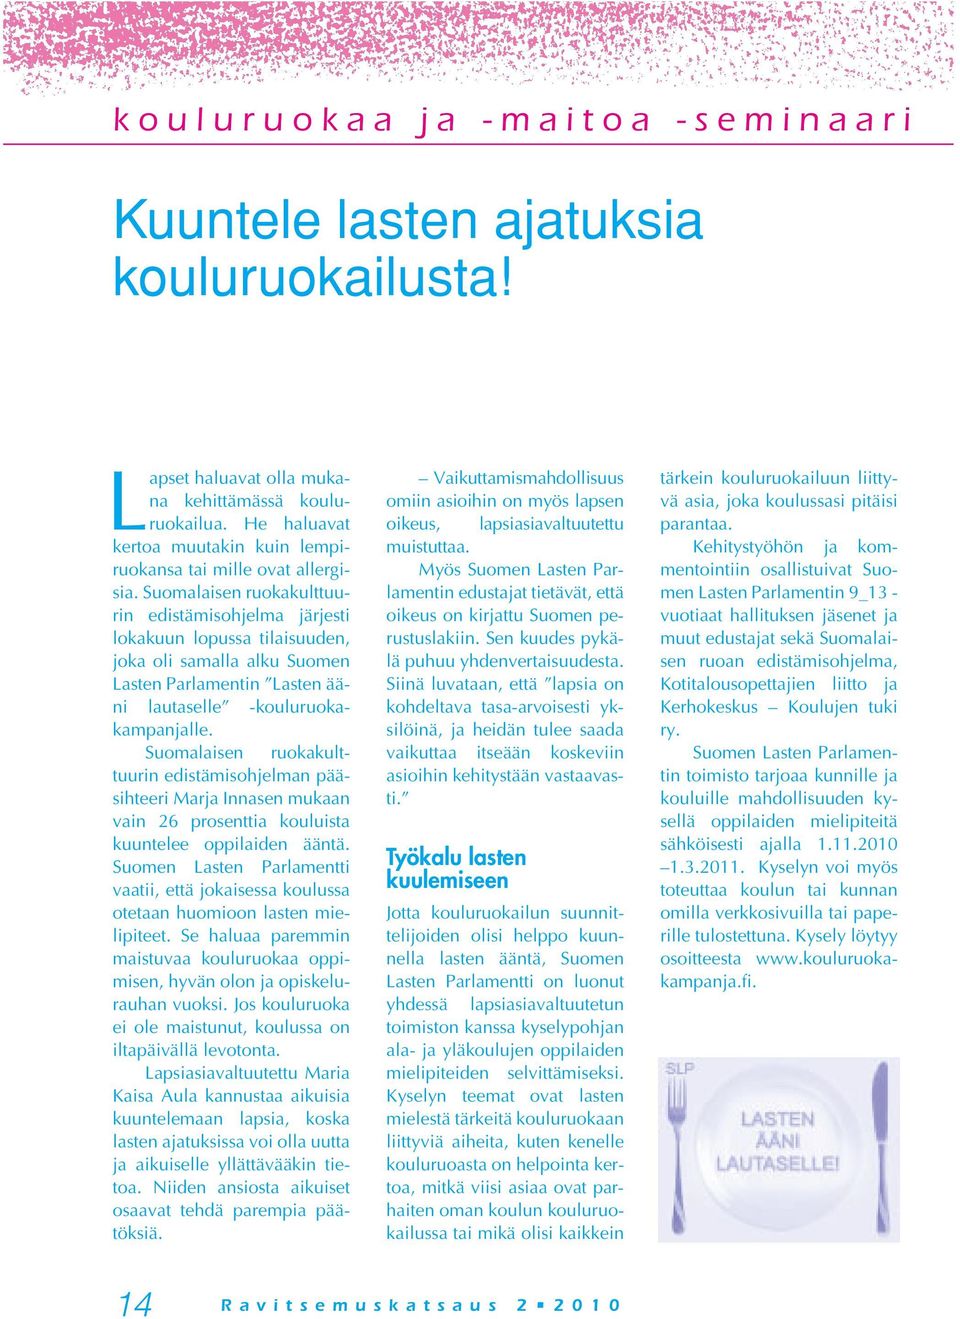 Suomalaisen ruokakulttuurin edistämisohjelma järjesti lokakuun lopussa tilaisuuden, joka oli samalla alku Suomen Lasten Parlamentin Lasten ääni lautaselle -kouluruokakampanjalle.